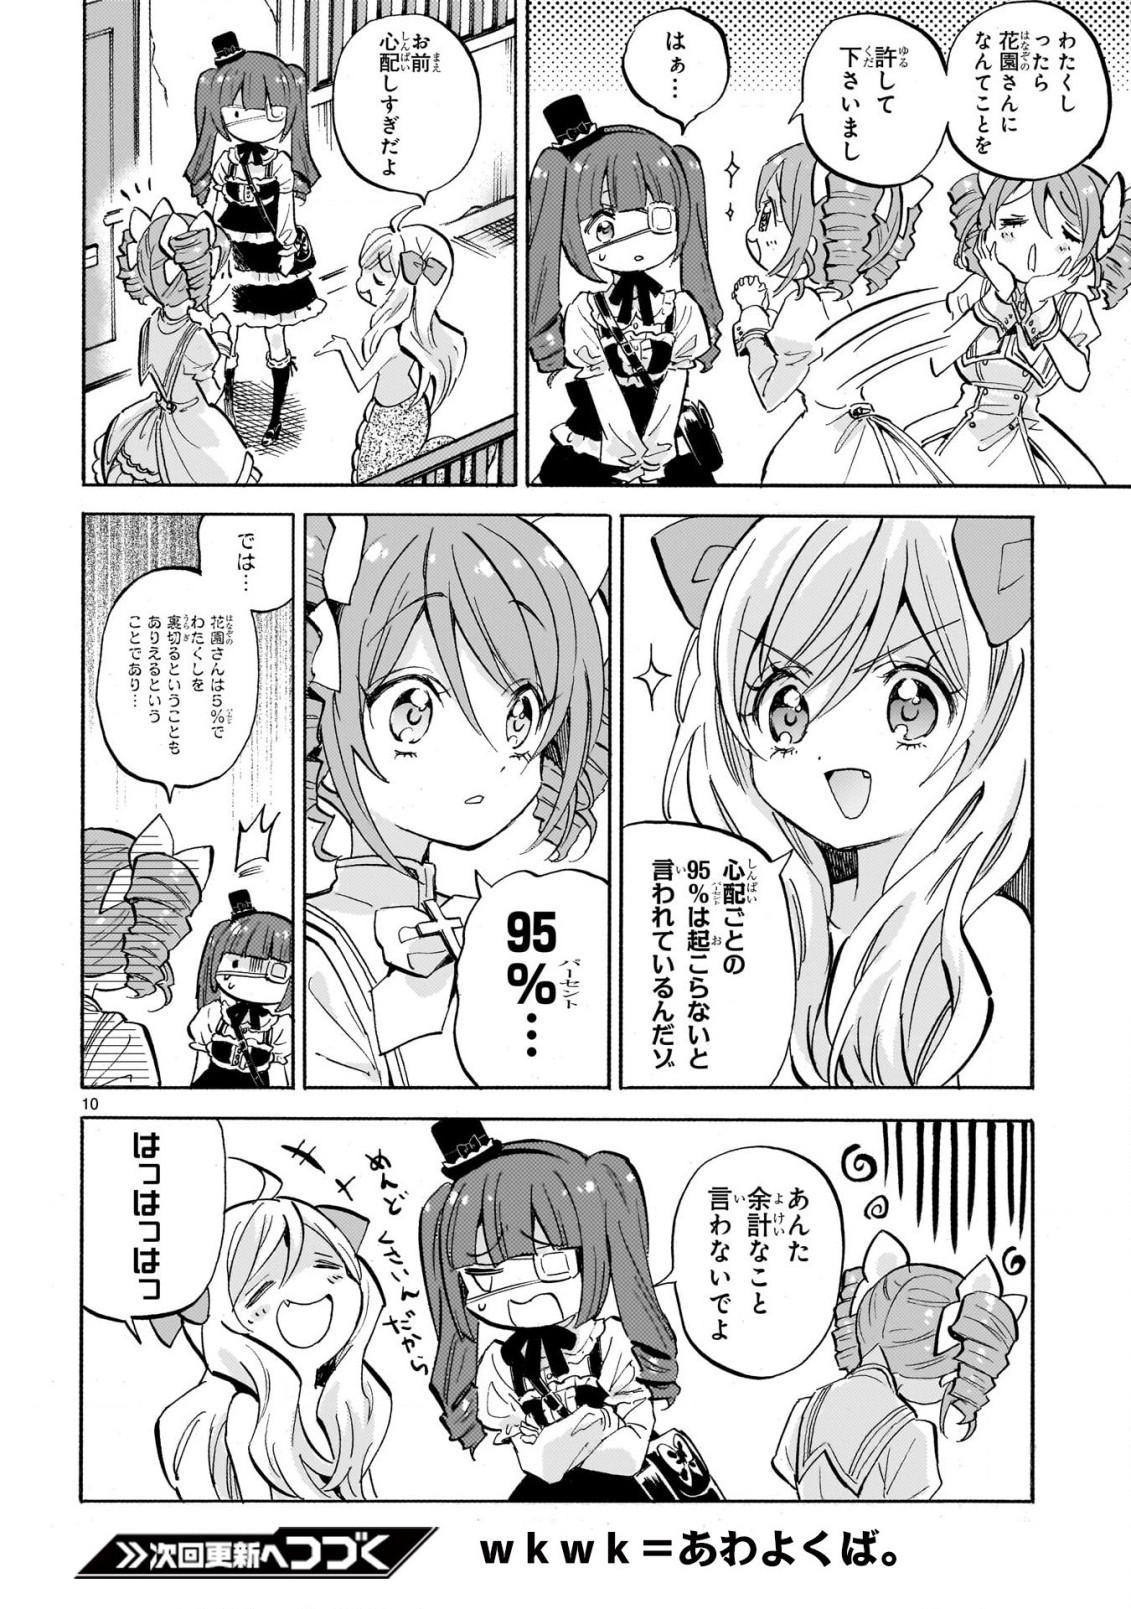 Jashin-chan Dropkick - Chapter 227 - Page 10